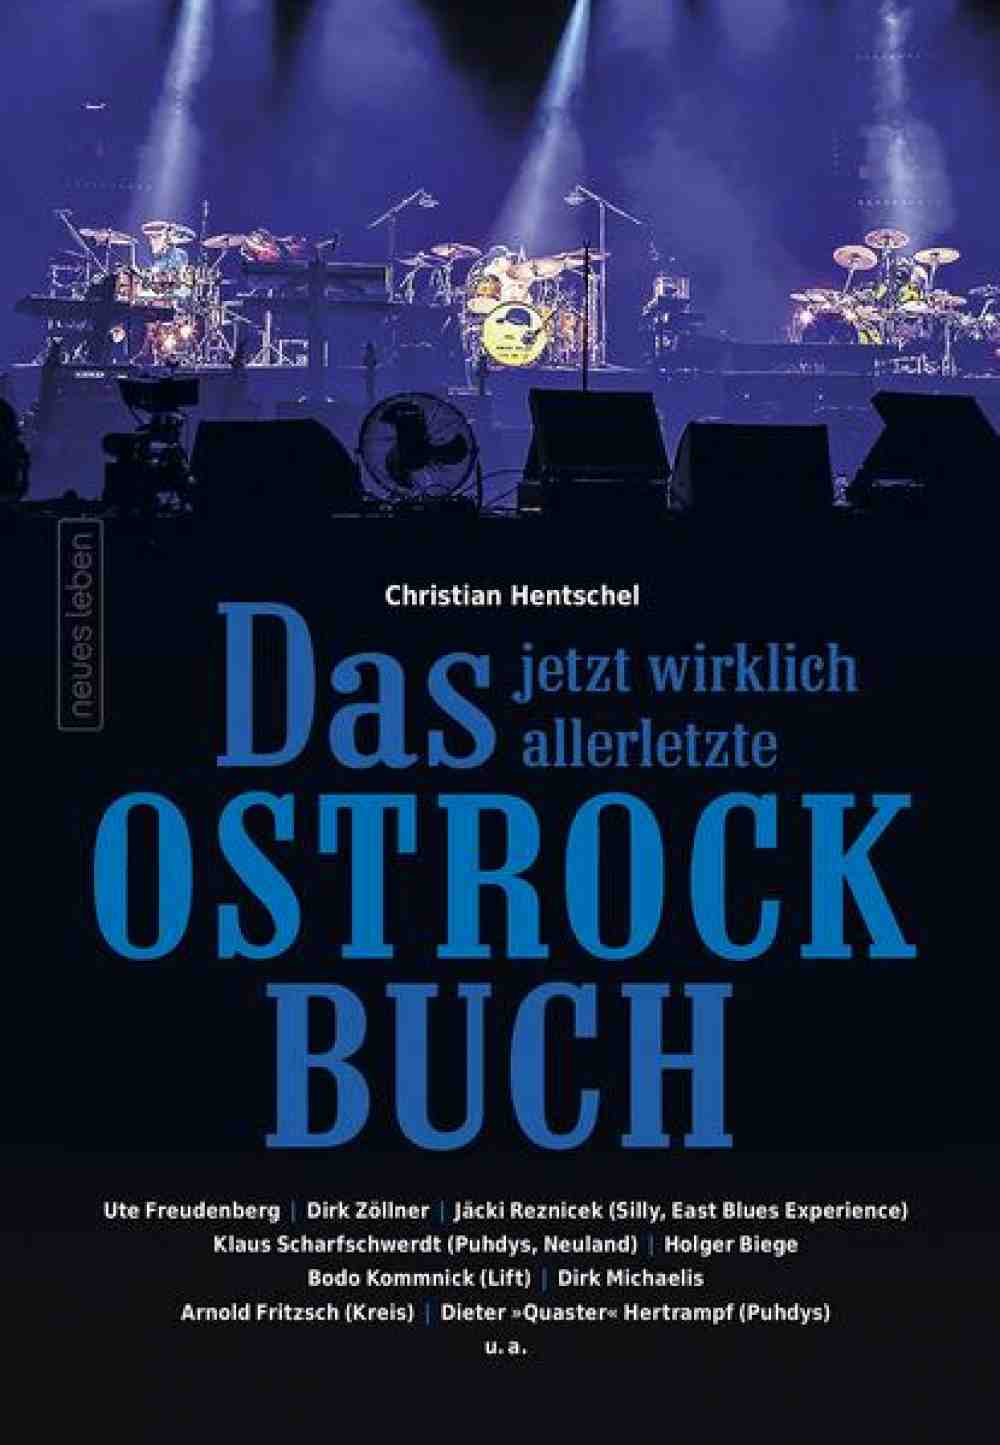 Anzeige: Lesetipps für Gütersloh: Christian Hentschel, »Das jetzt wirklich allerletzte Ostrockbuch«, Buch online bestellen, online kaufen